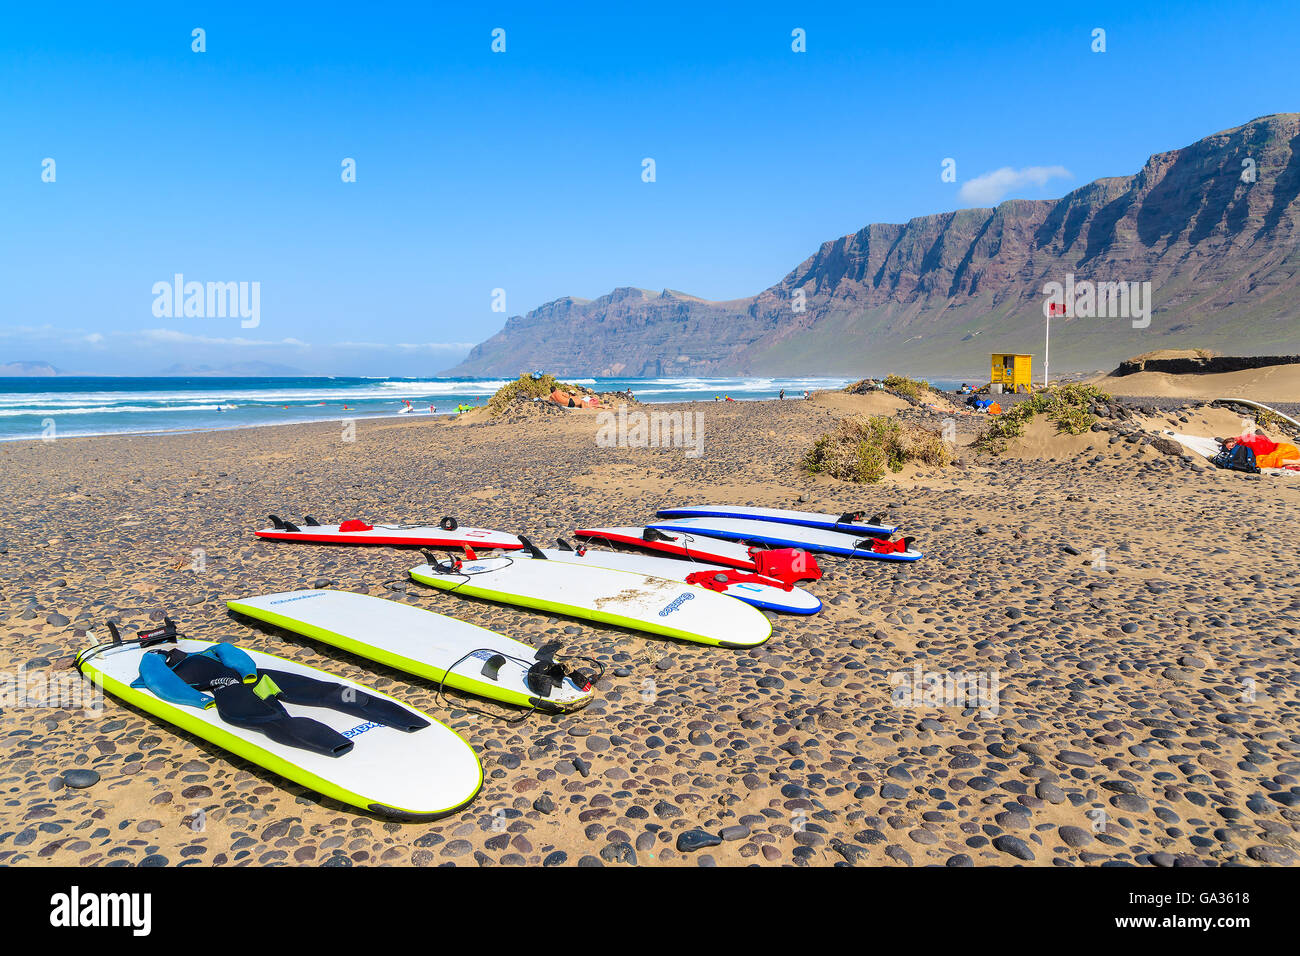 Spiaggia di Famara, Lanzarote - Jan 15, 2015: schede di surf sulla spiaggia di Famara che è famosa per le migliori onde dell'oceano sull isola di Lanzarote. Le isole Canarie sono popolare destinazione per sport acquatici. Foto Stock